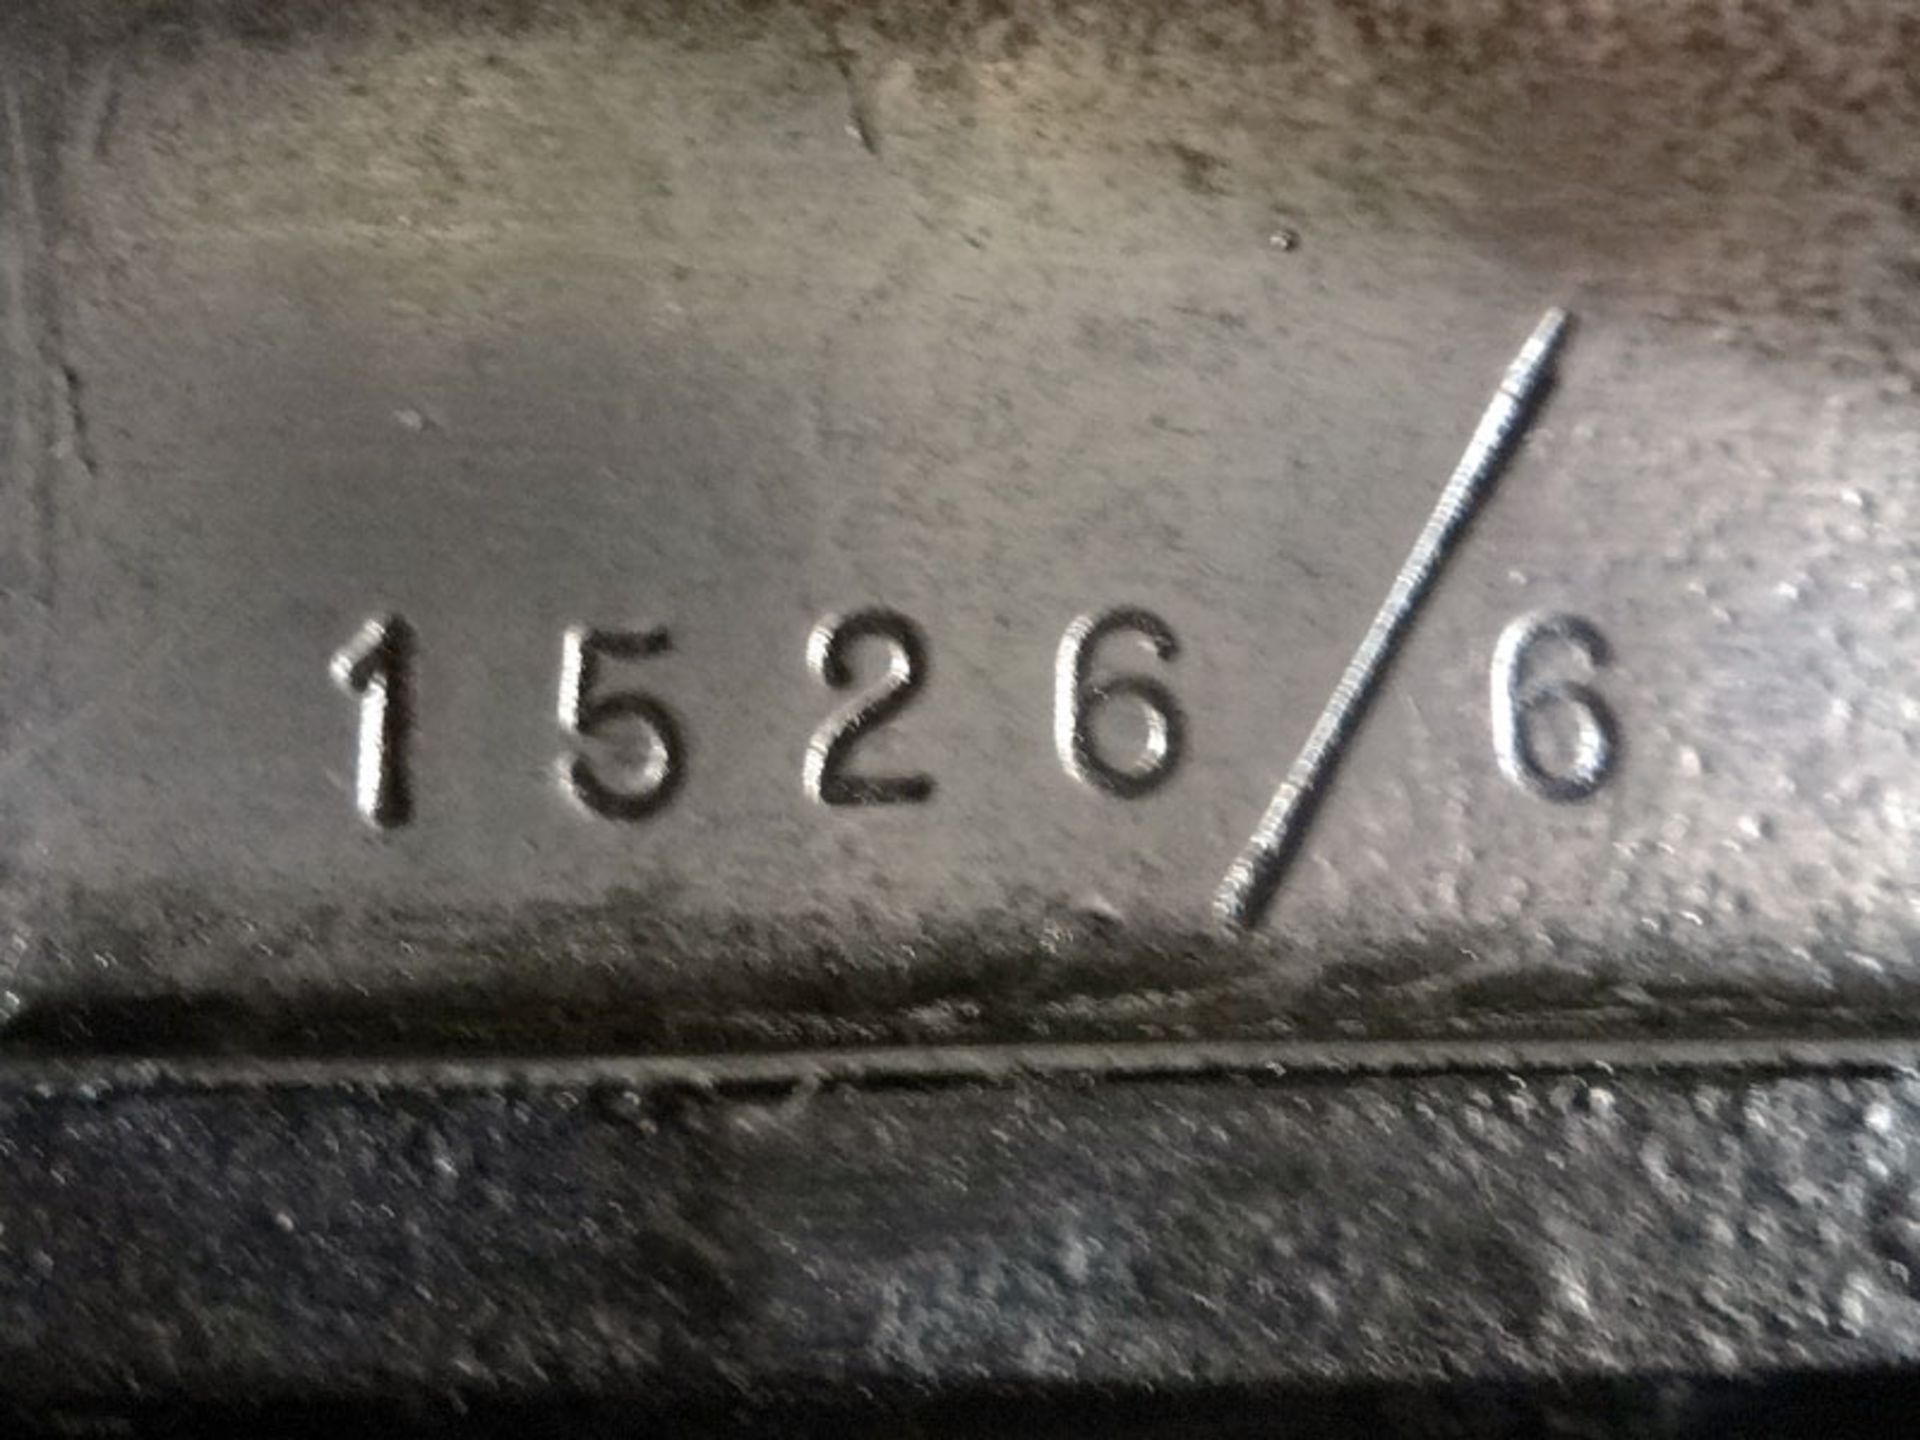 - Current owner for 30 years

- Matching frame/engine

- Original UK registration

- 12 volt - Image 6 of 7